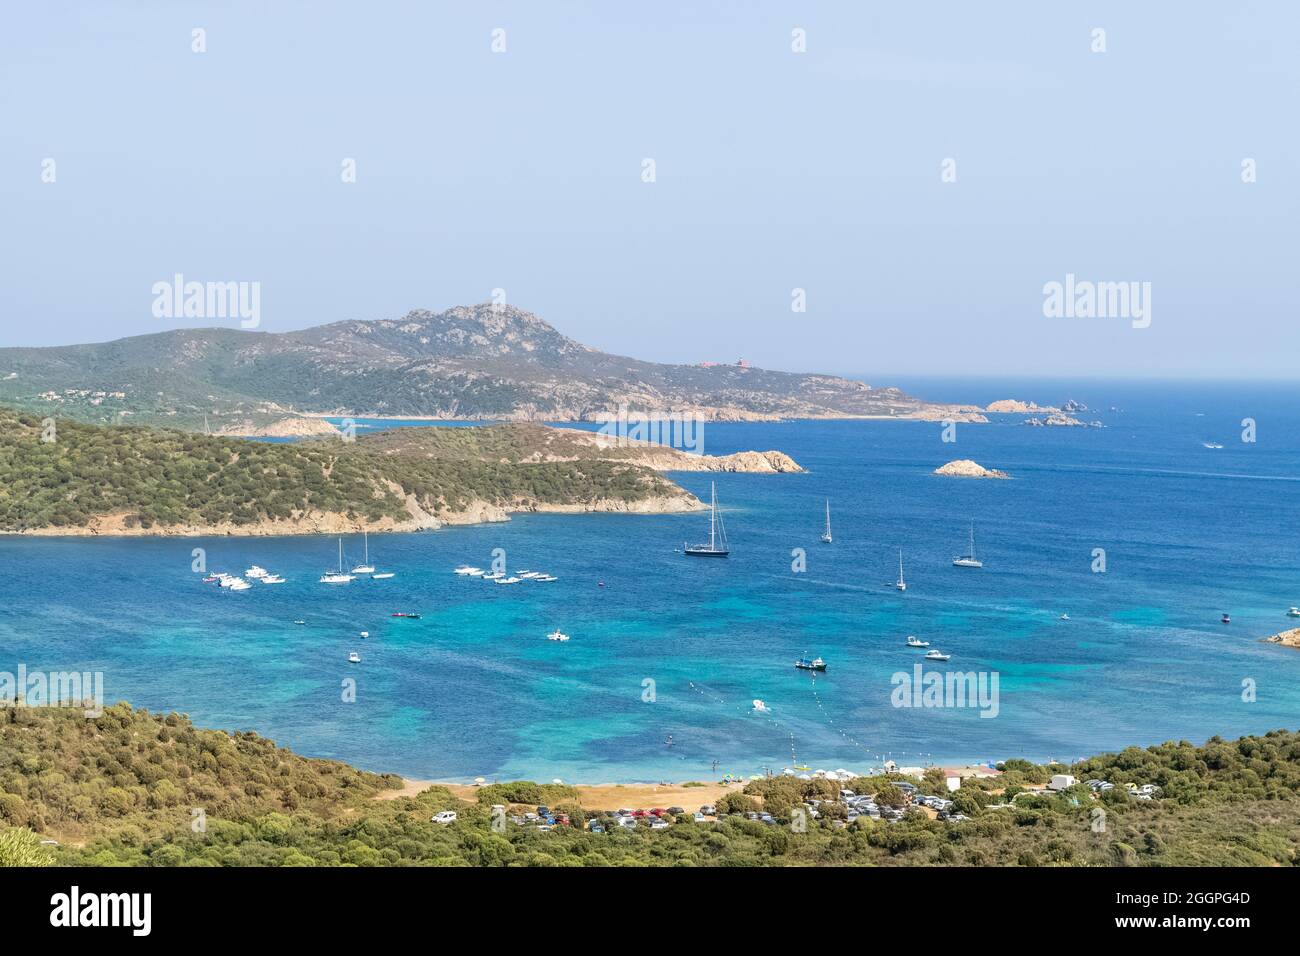 Vista panoramica sulla splendida costa sarda meridionale, Teulada, Italia. Nota i bellissimi colori turchesi del mare in contrasto con i colori o Foto Stock